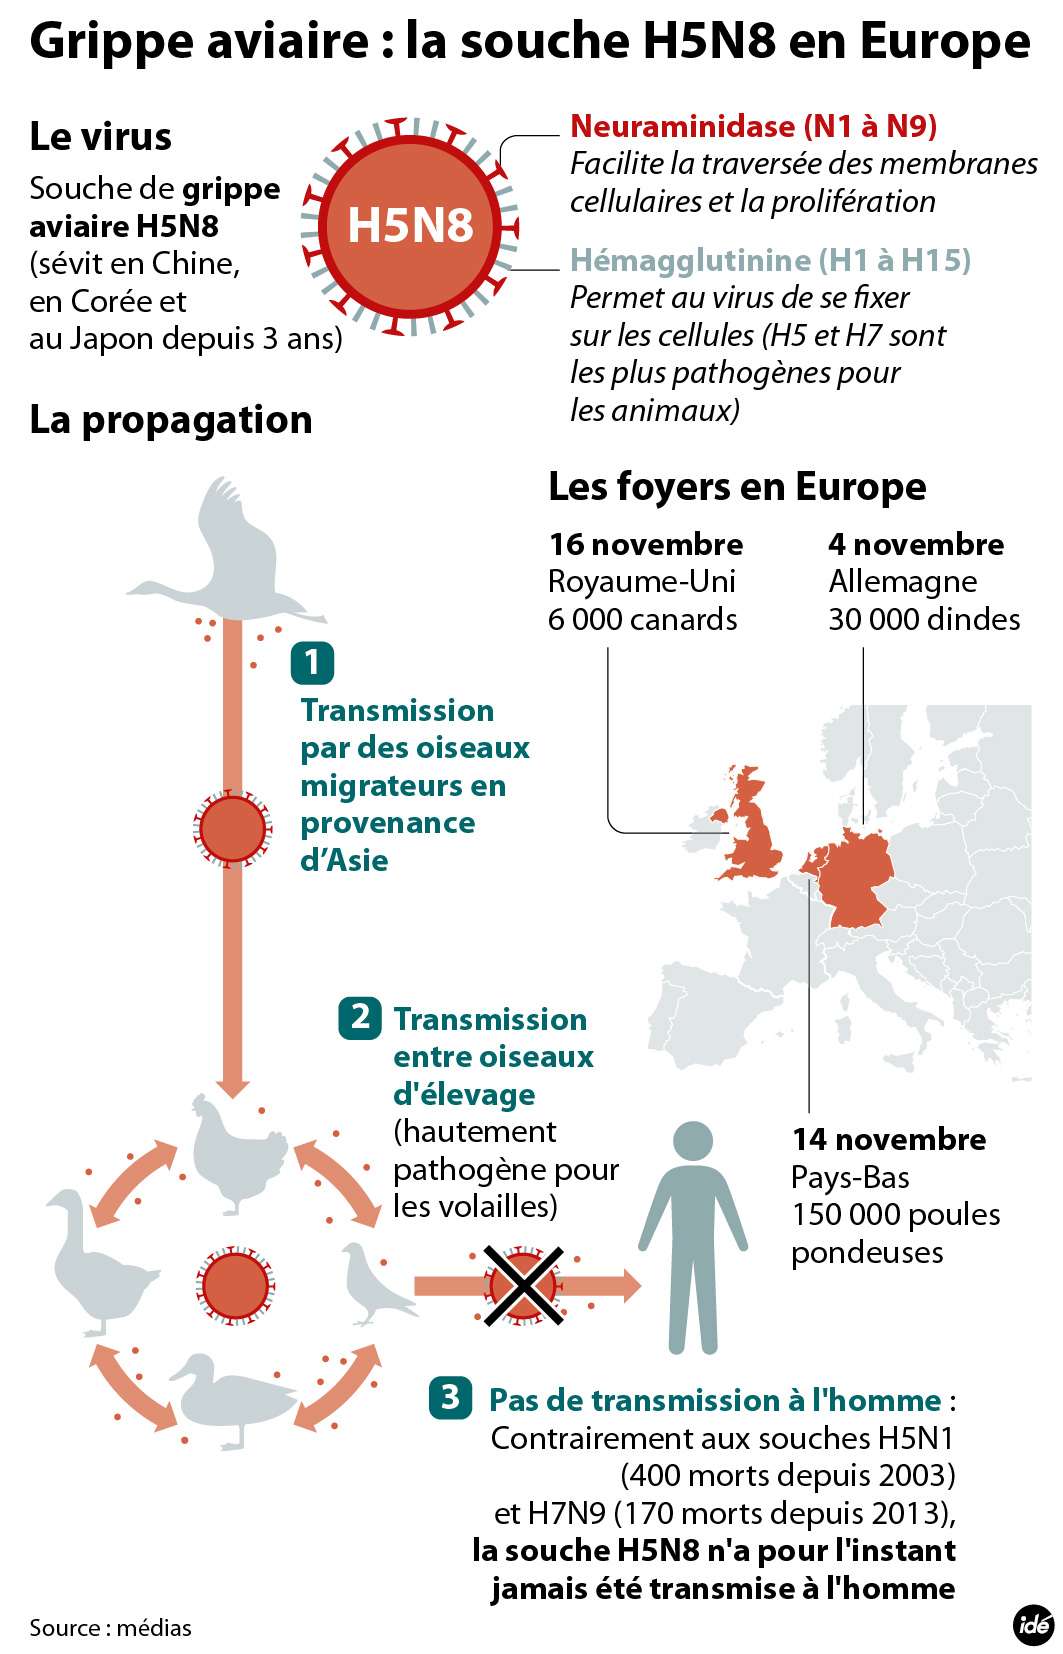 Un virus de grippe aviaire (H5N8) a contaminé trois élevages en Europe au mois de novembre 2014. © Idé